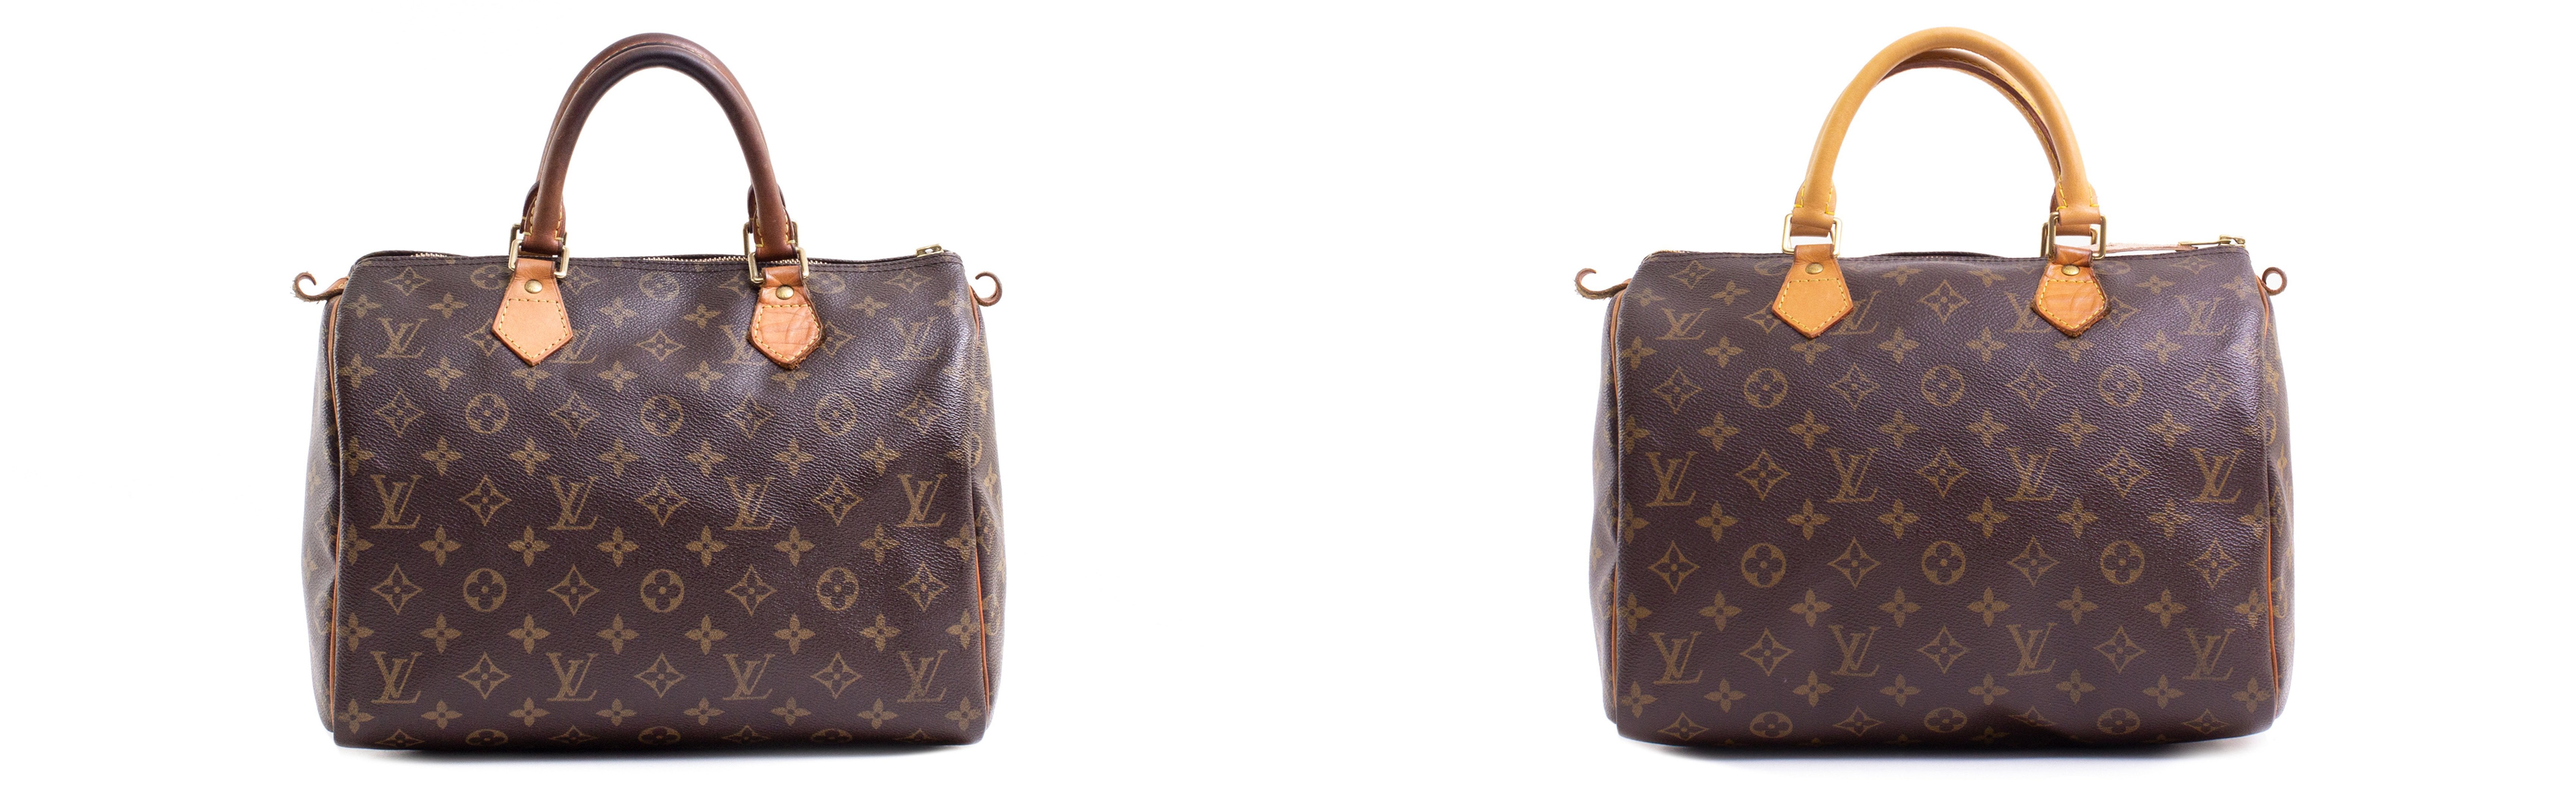 Louisvuitton Bag #repair - Handbag Clinic & Boutique